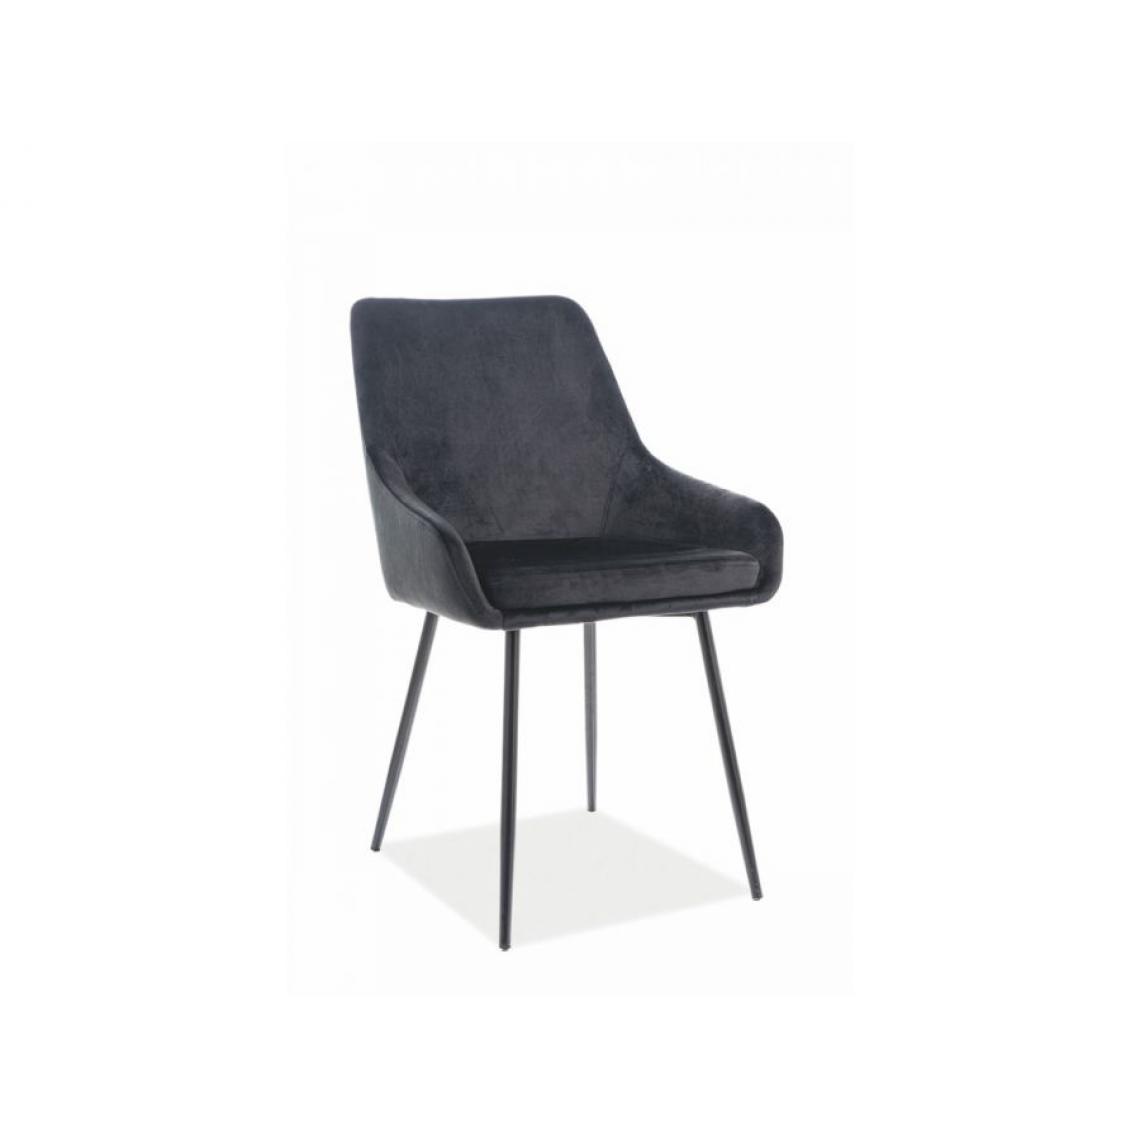 Hucoco - ALNI | Chaise confortable velours style glamour salle à manger bureau | 83x39x45 cm | Tissu velouté | Assise avec coussin - Noir - Chaises